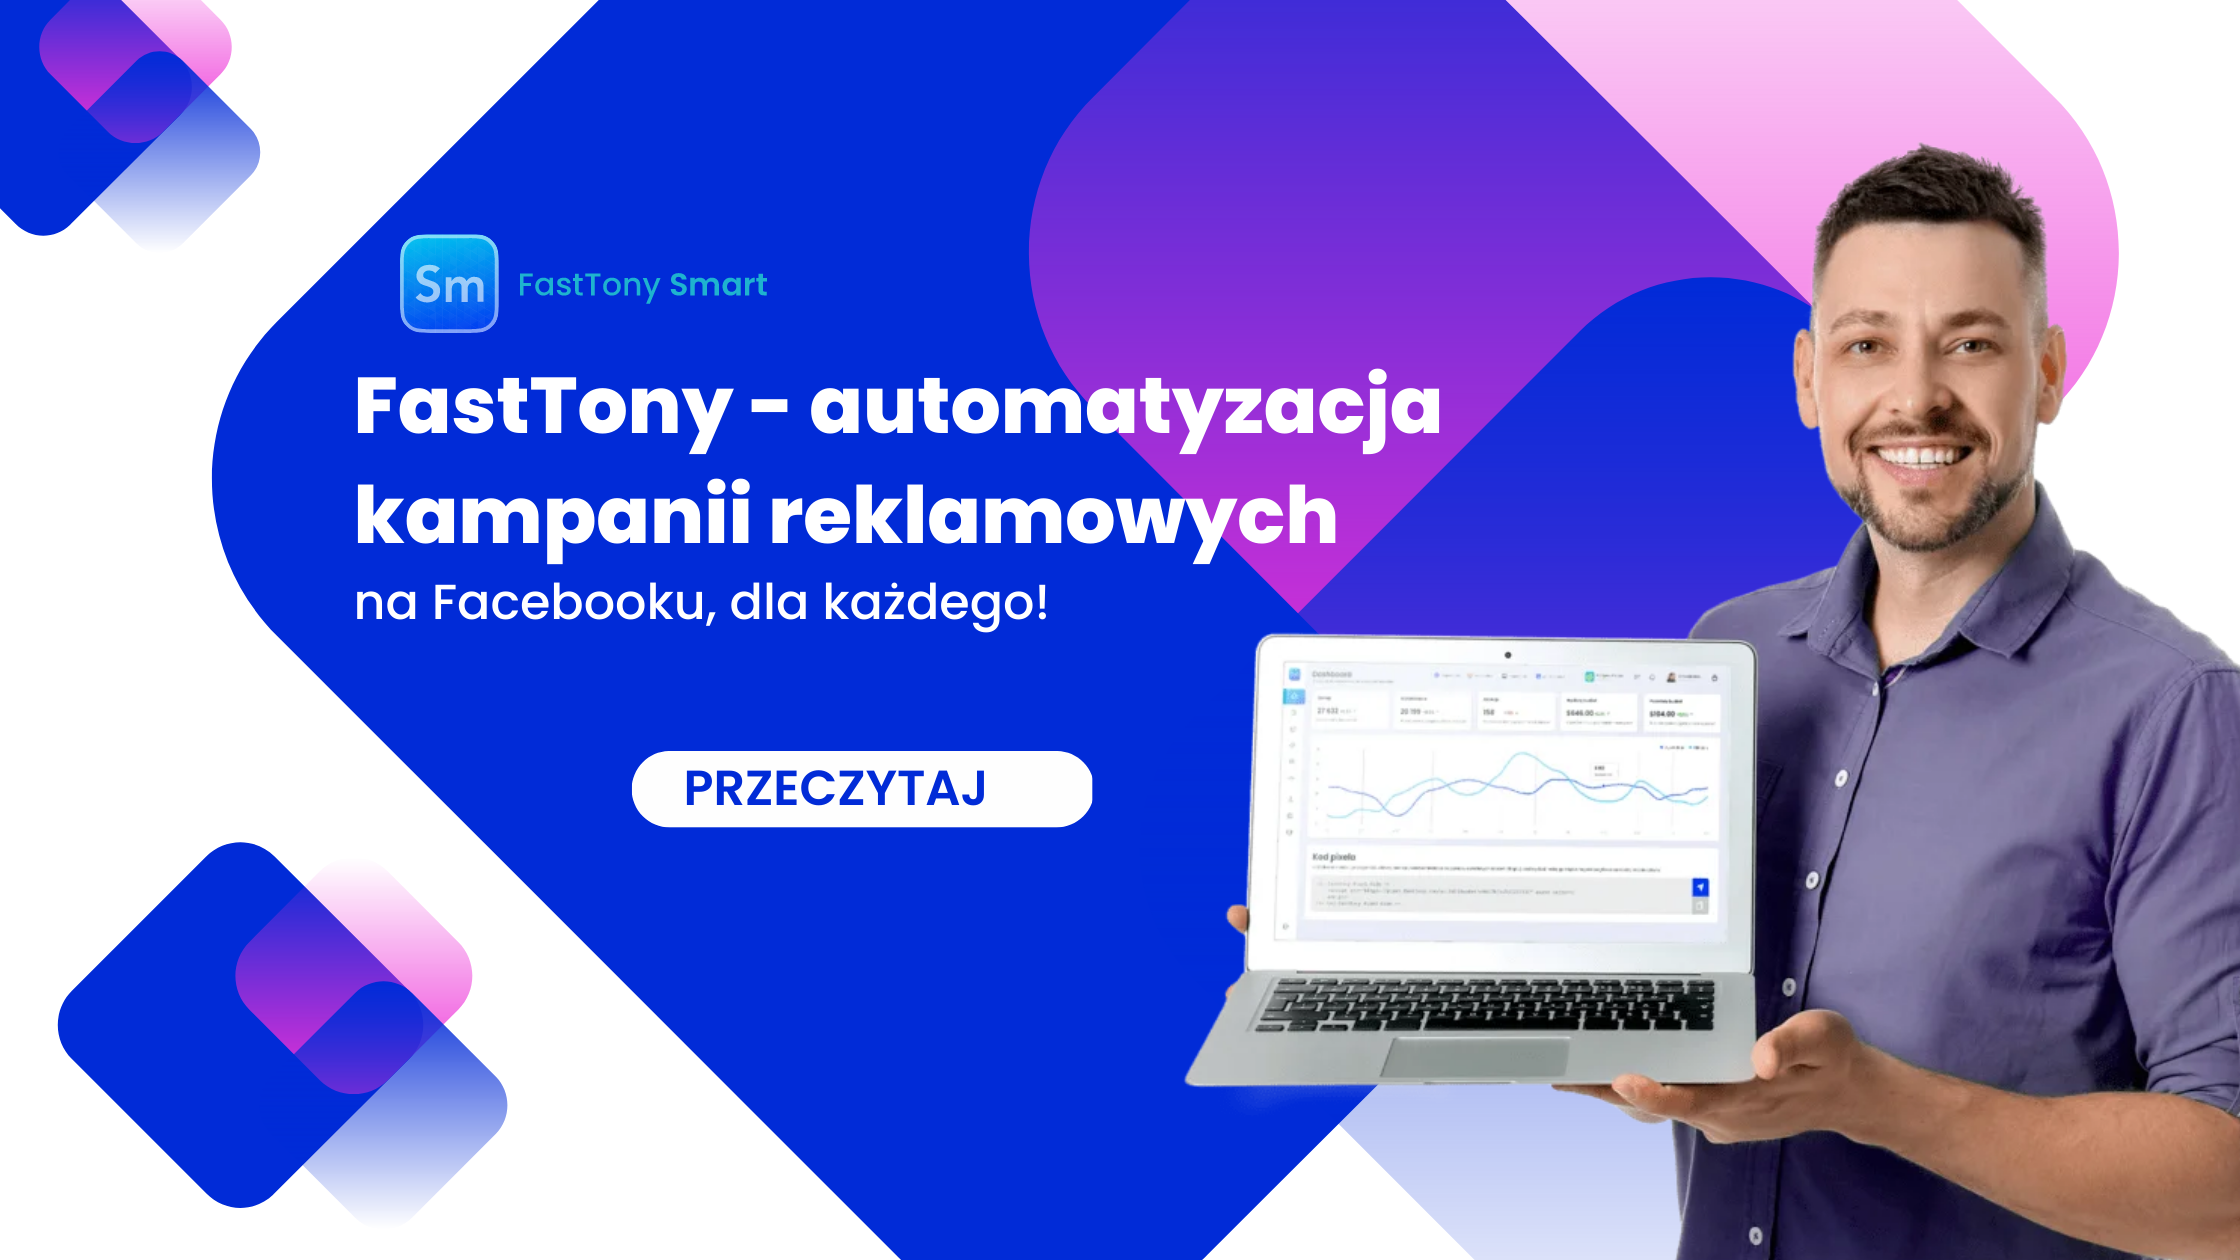 FastTony – automatyzacja kampanii reklamowych na Facebooku dla każdego